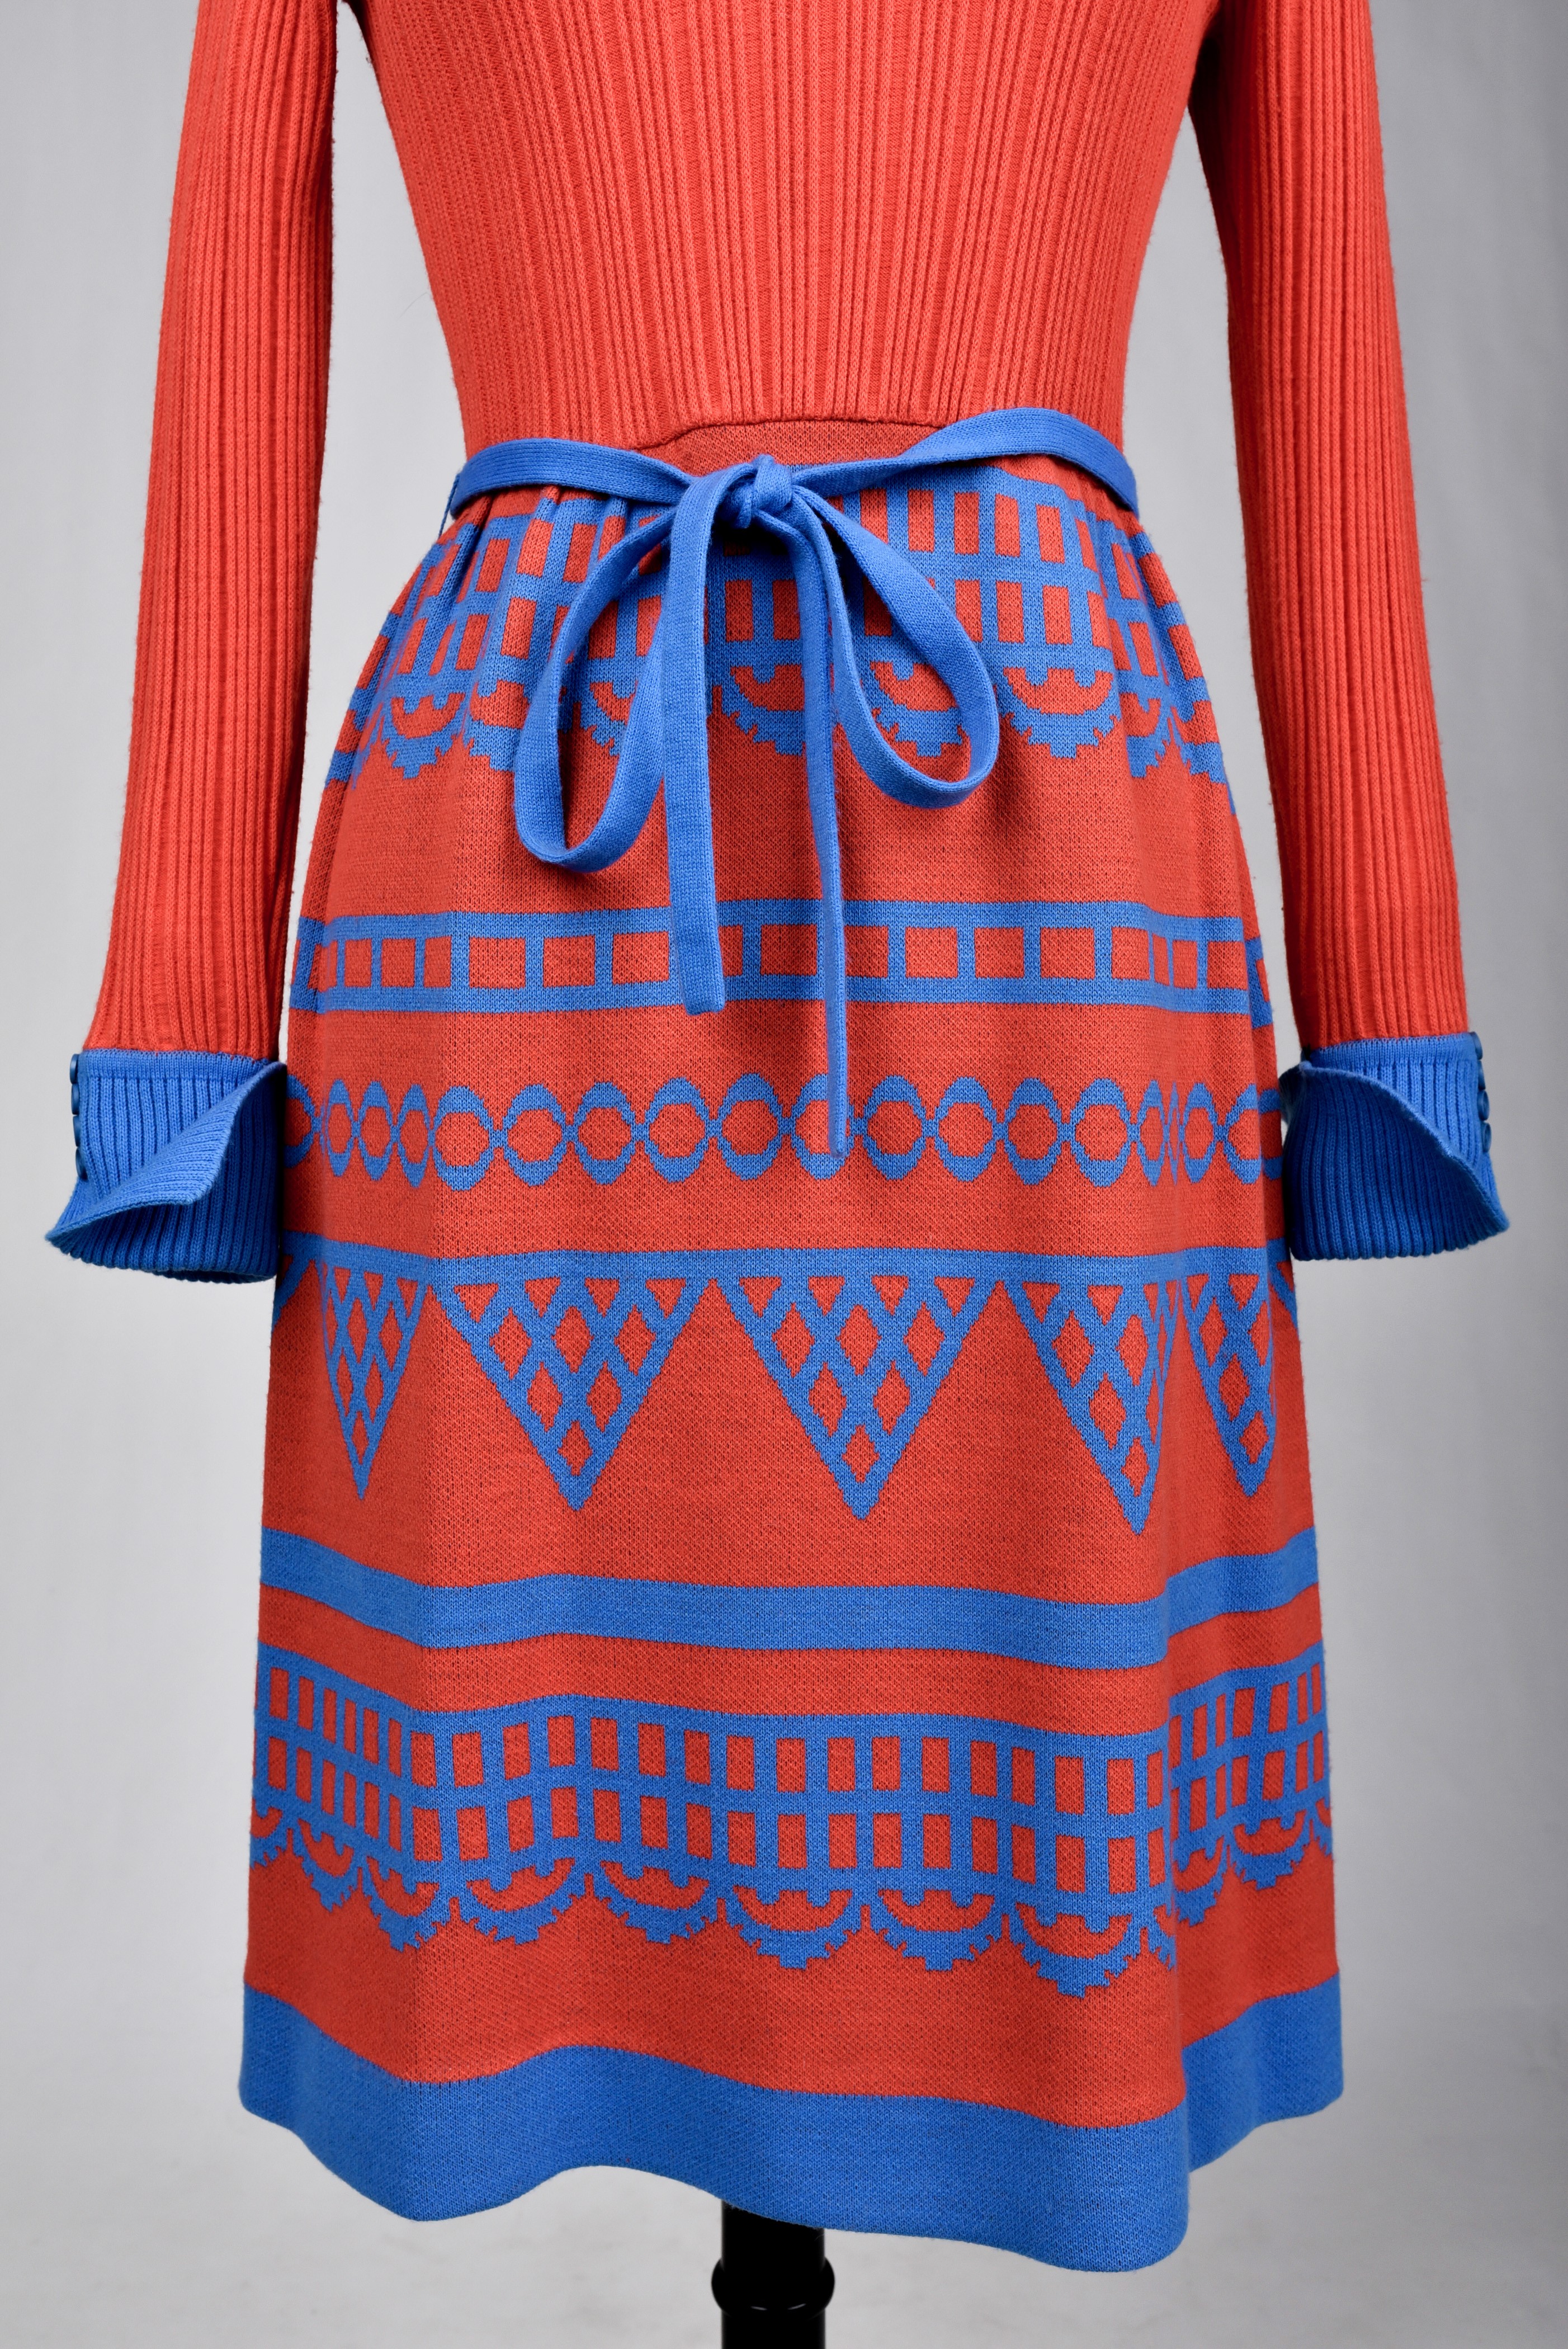 LOUIS FERAUD 1970 Russian Style Dress 